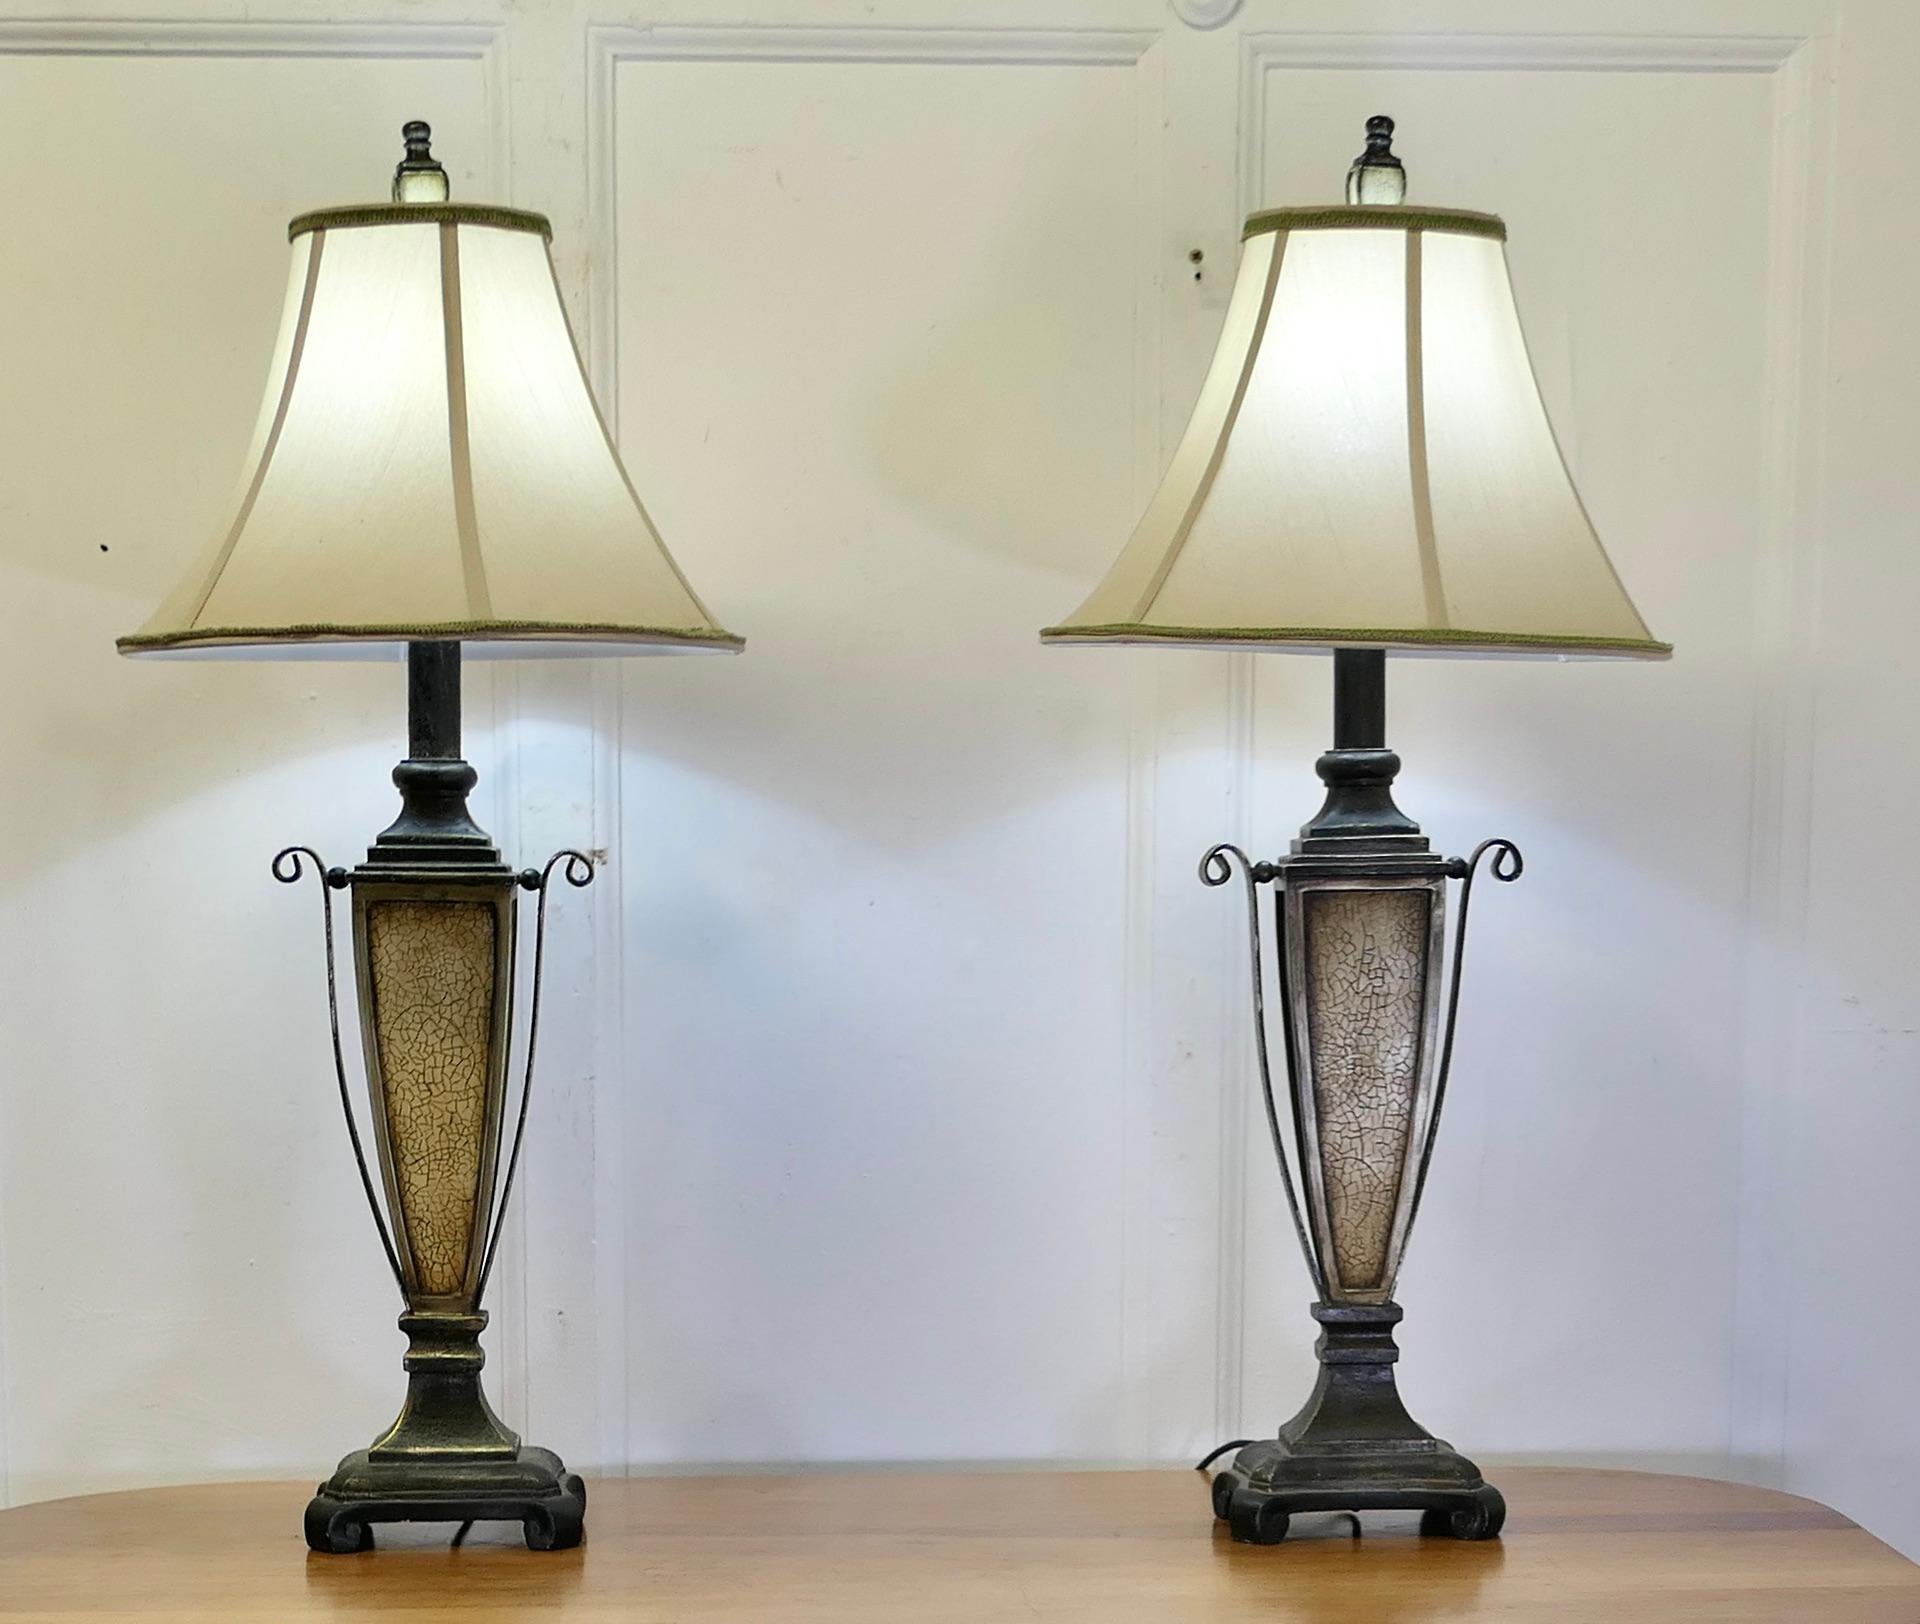 Stile Adam Coppia di lampade da tavolo in stile Art Decor   Un'emozionante coppia di lampade in vendita